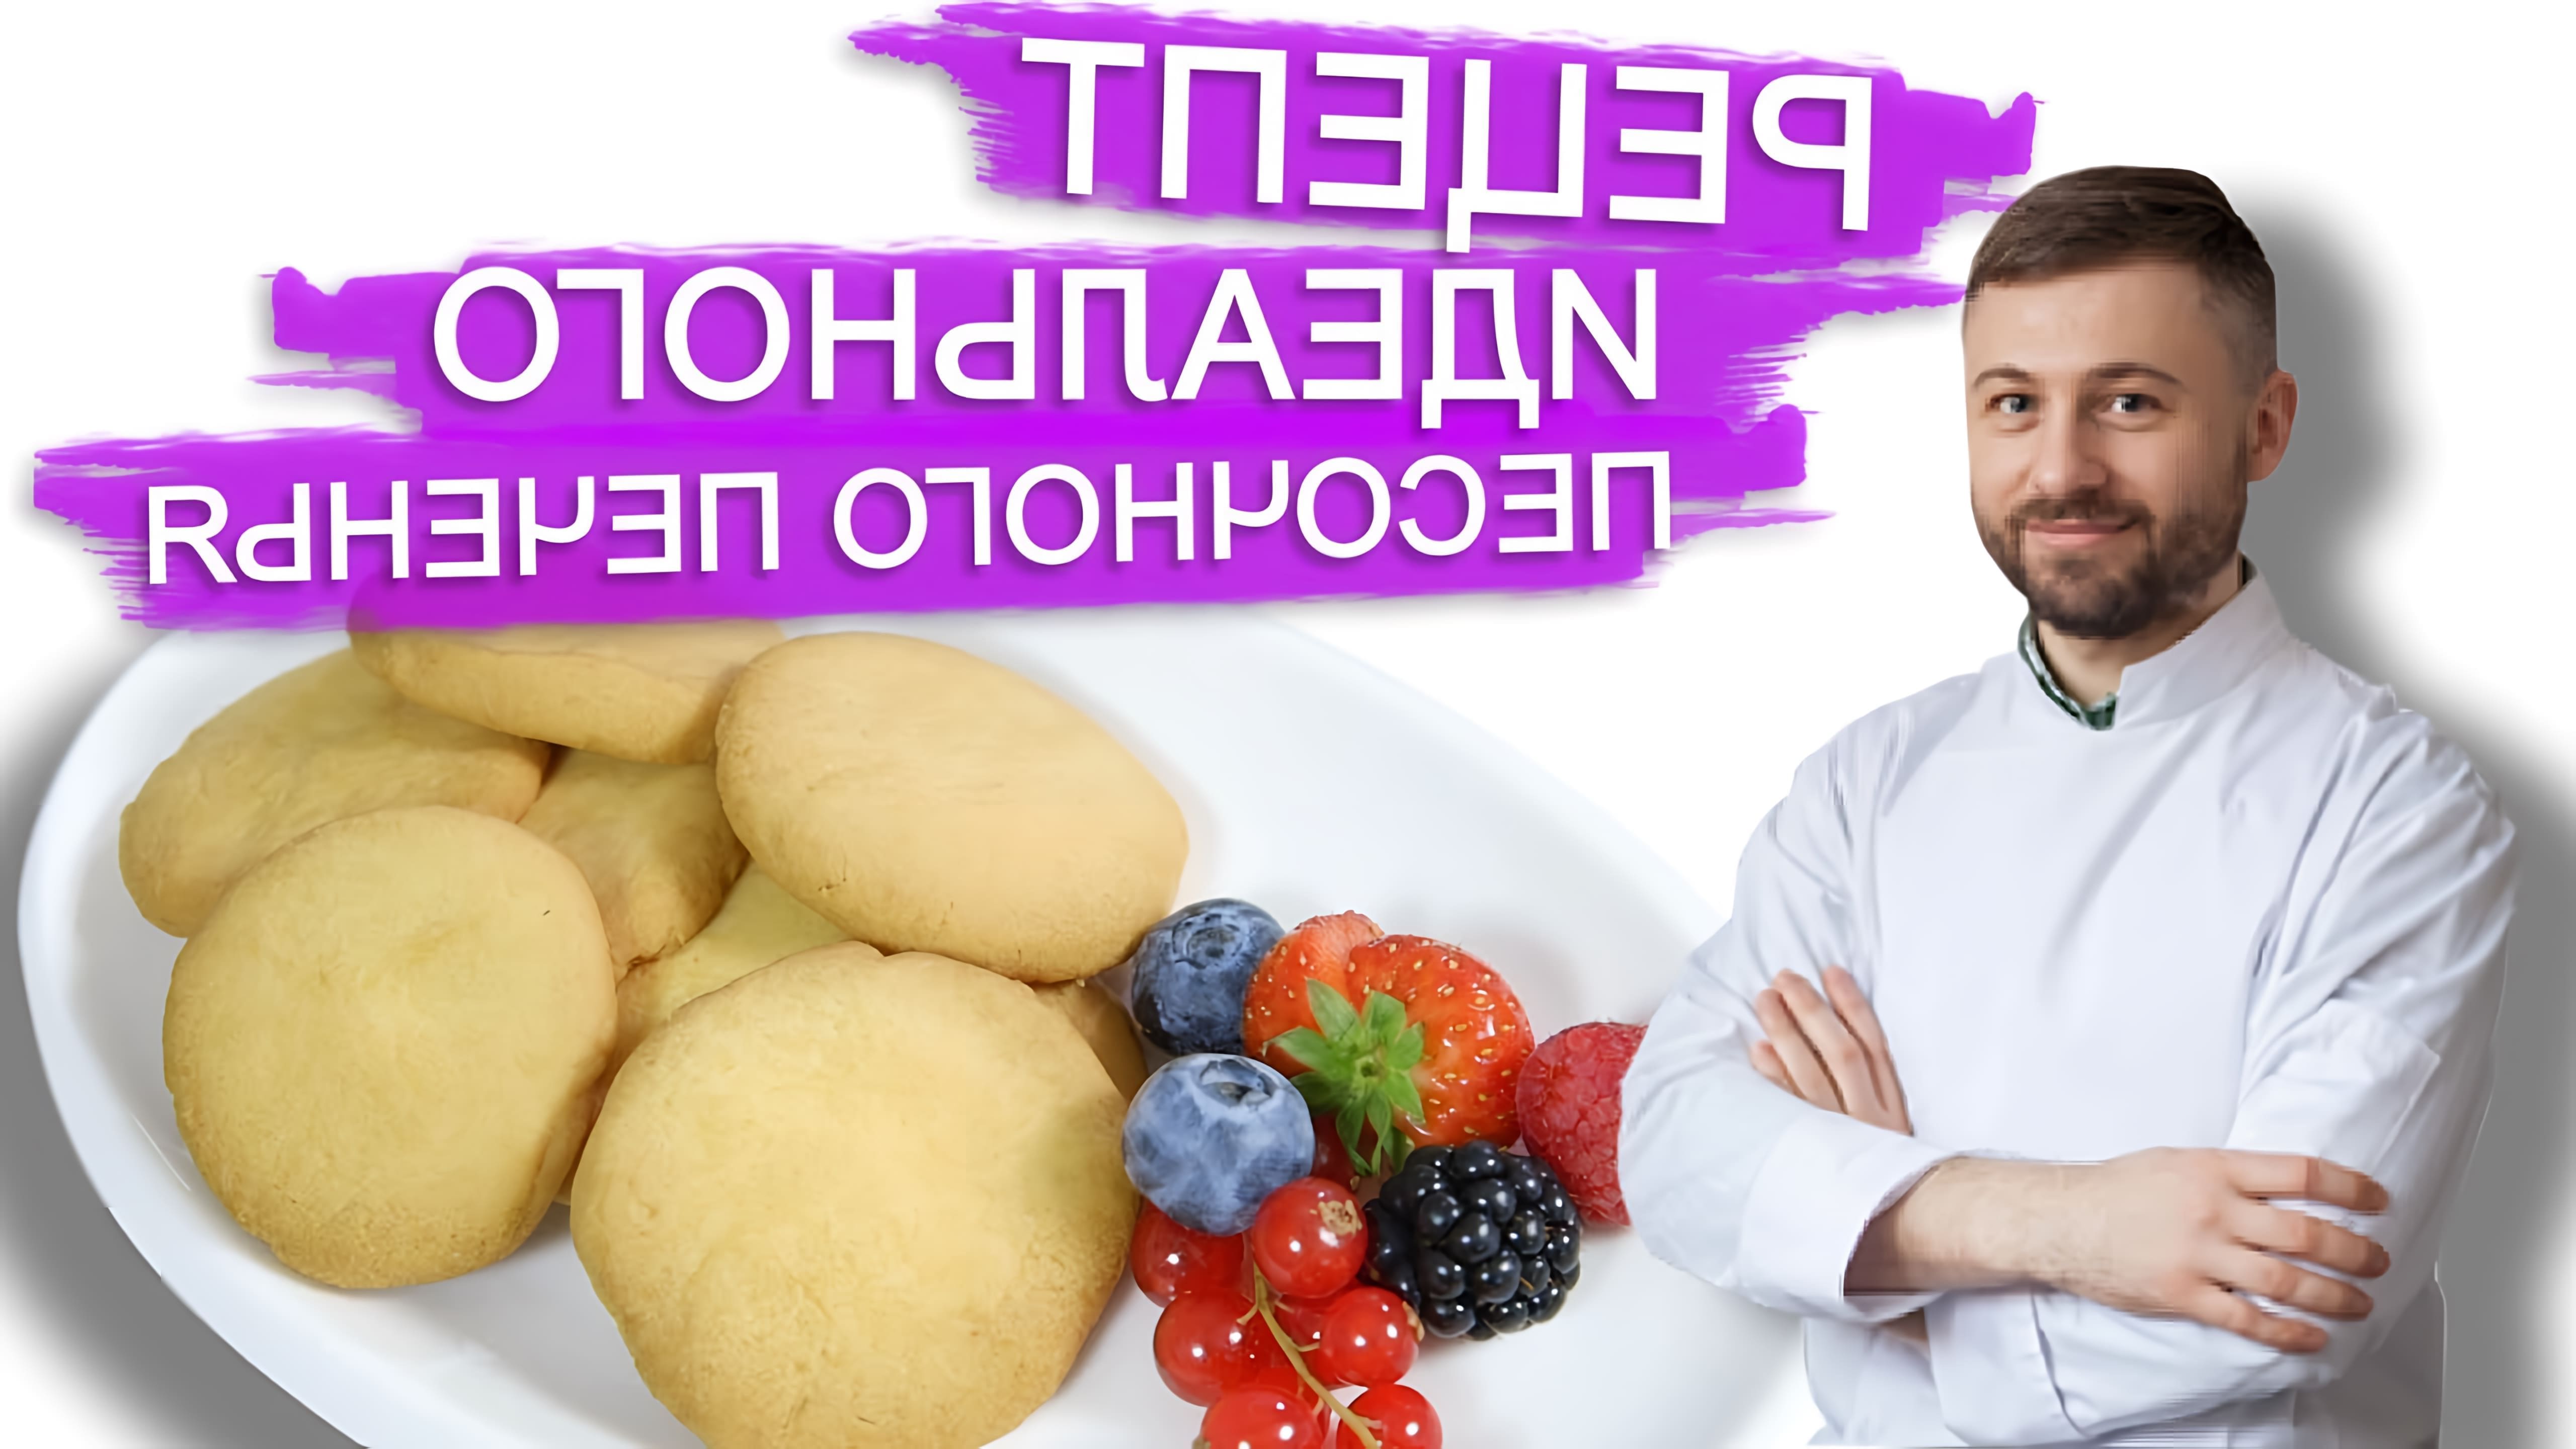 В этом видео шеф-кондитер Сергей показывает, как приготовить идеальное песочное тесто для печенья